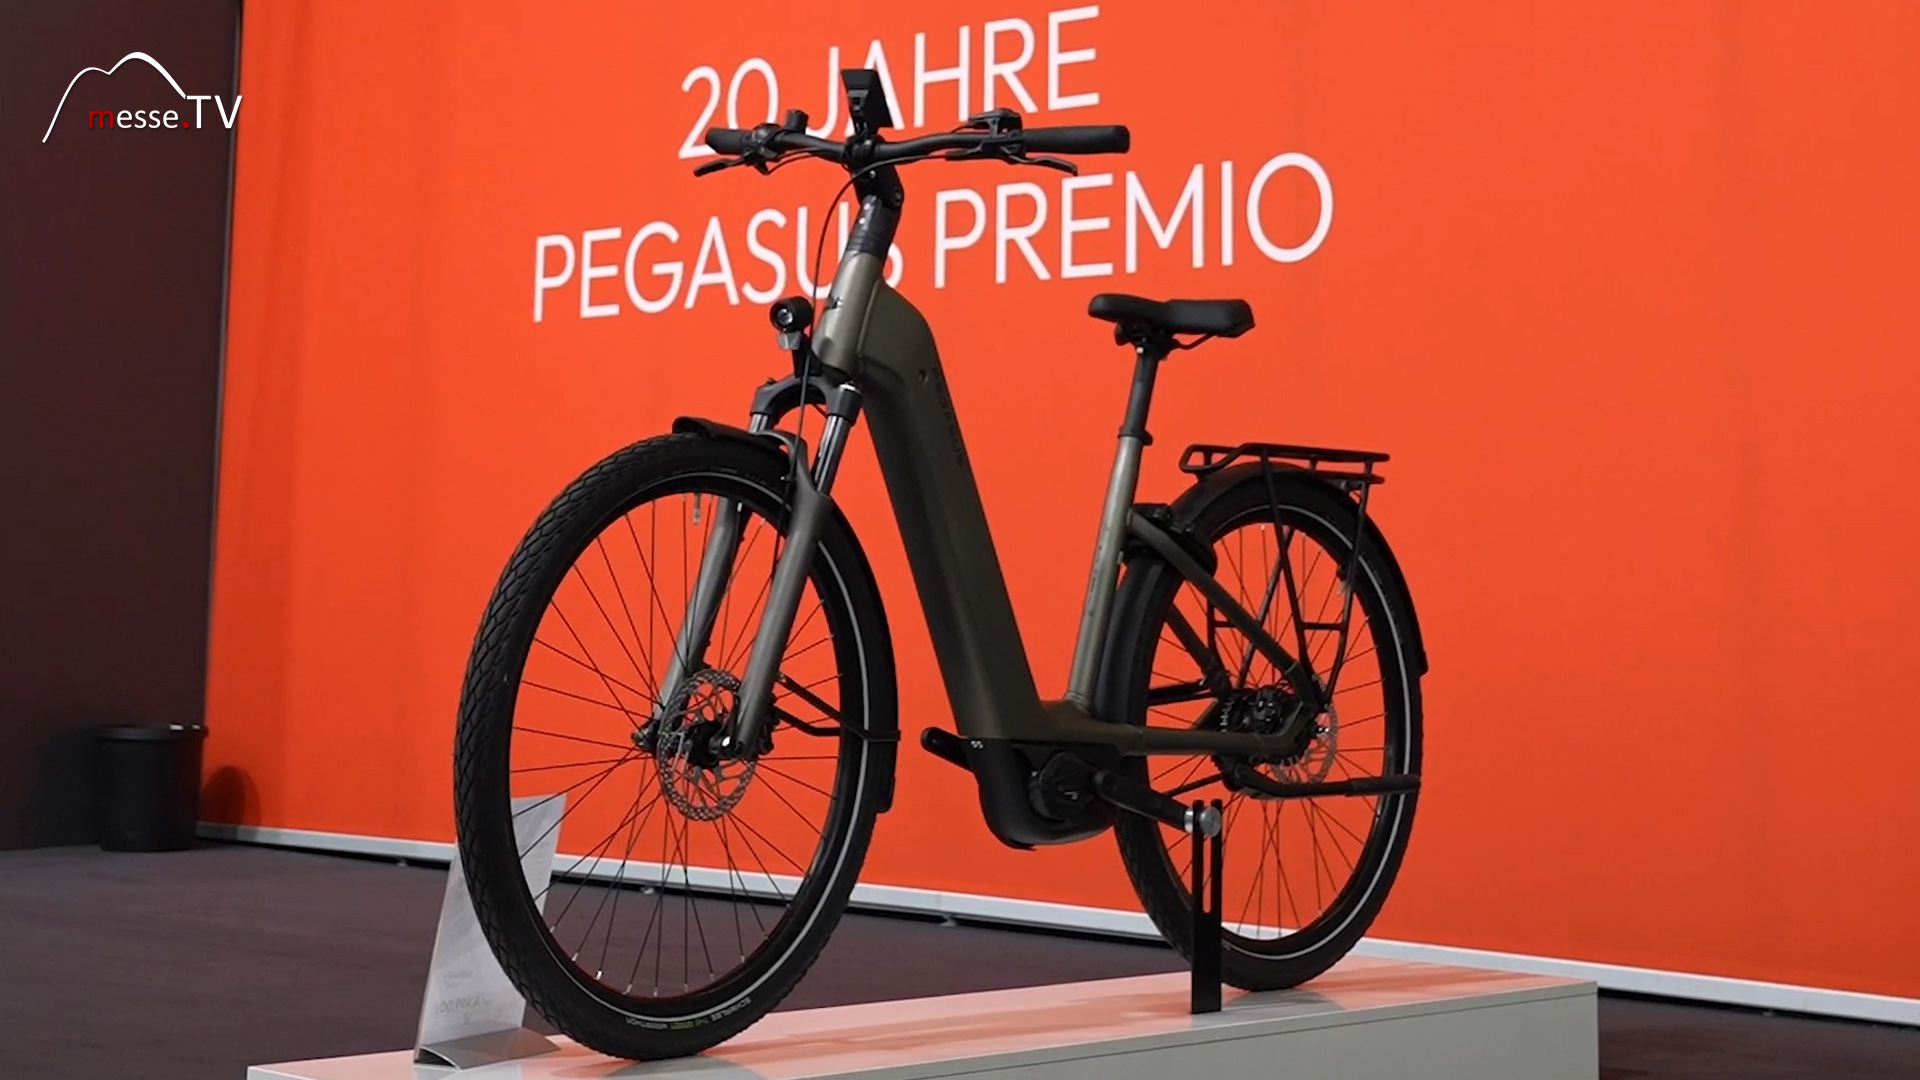 E Bike Neuheiten Premio spannende neue Features Pegasus Bikes